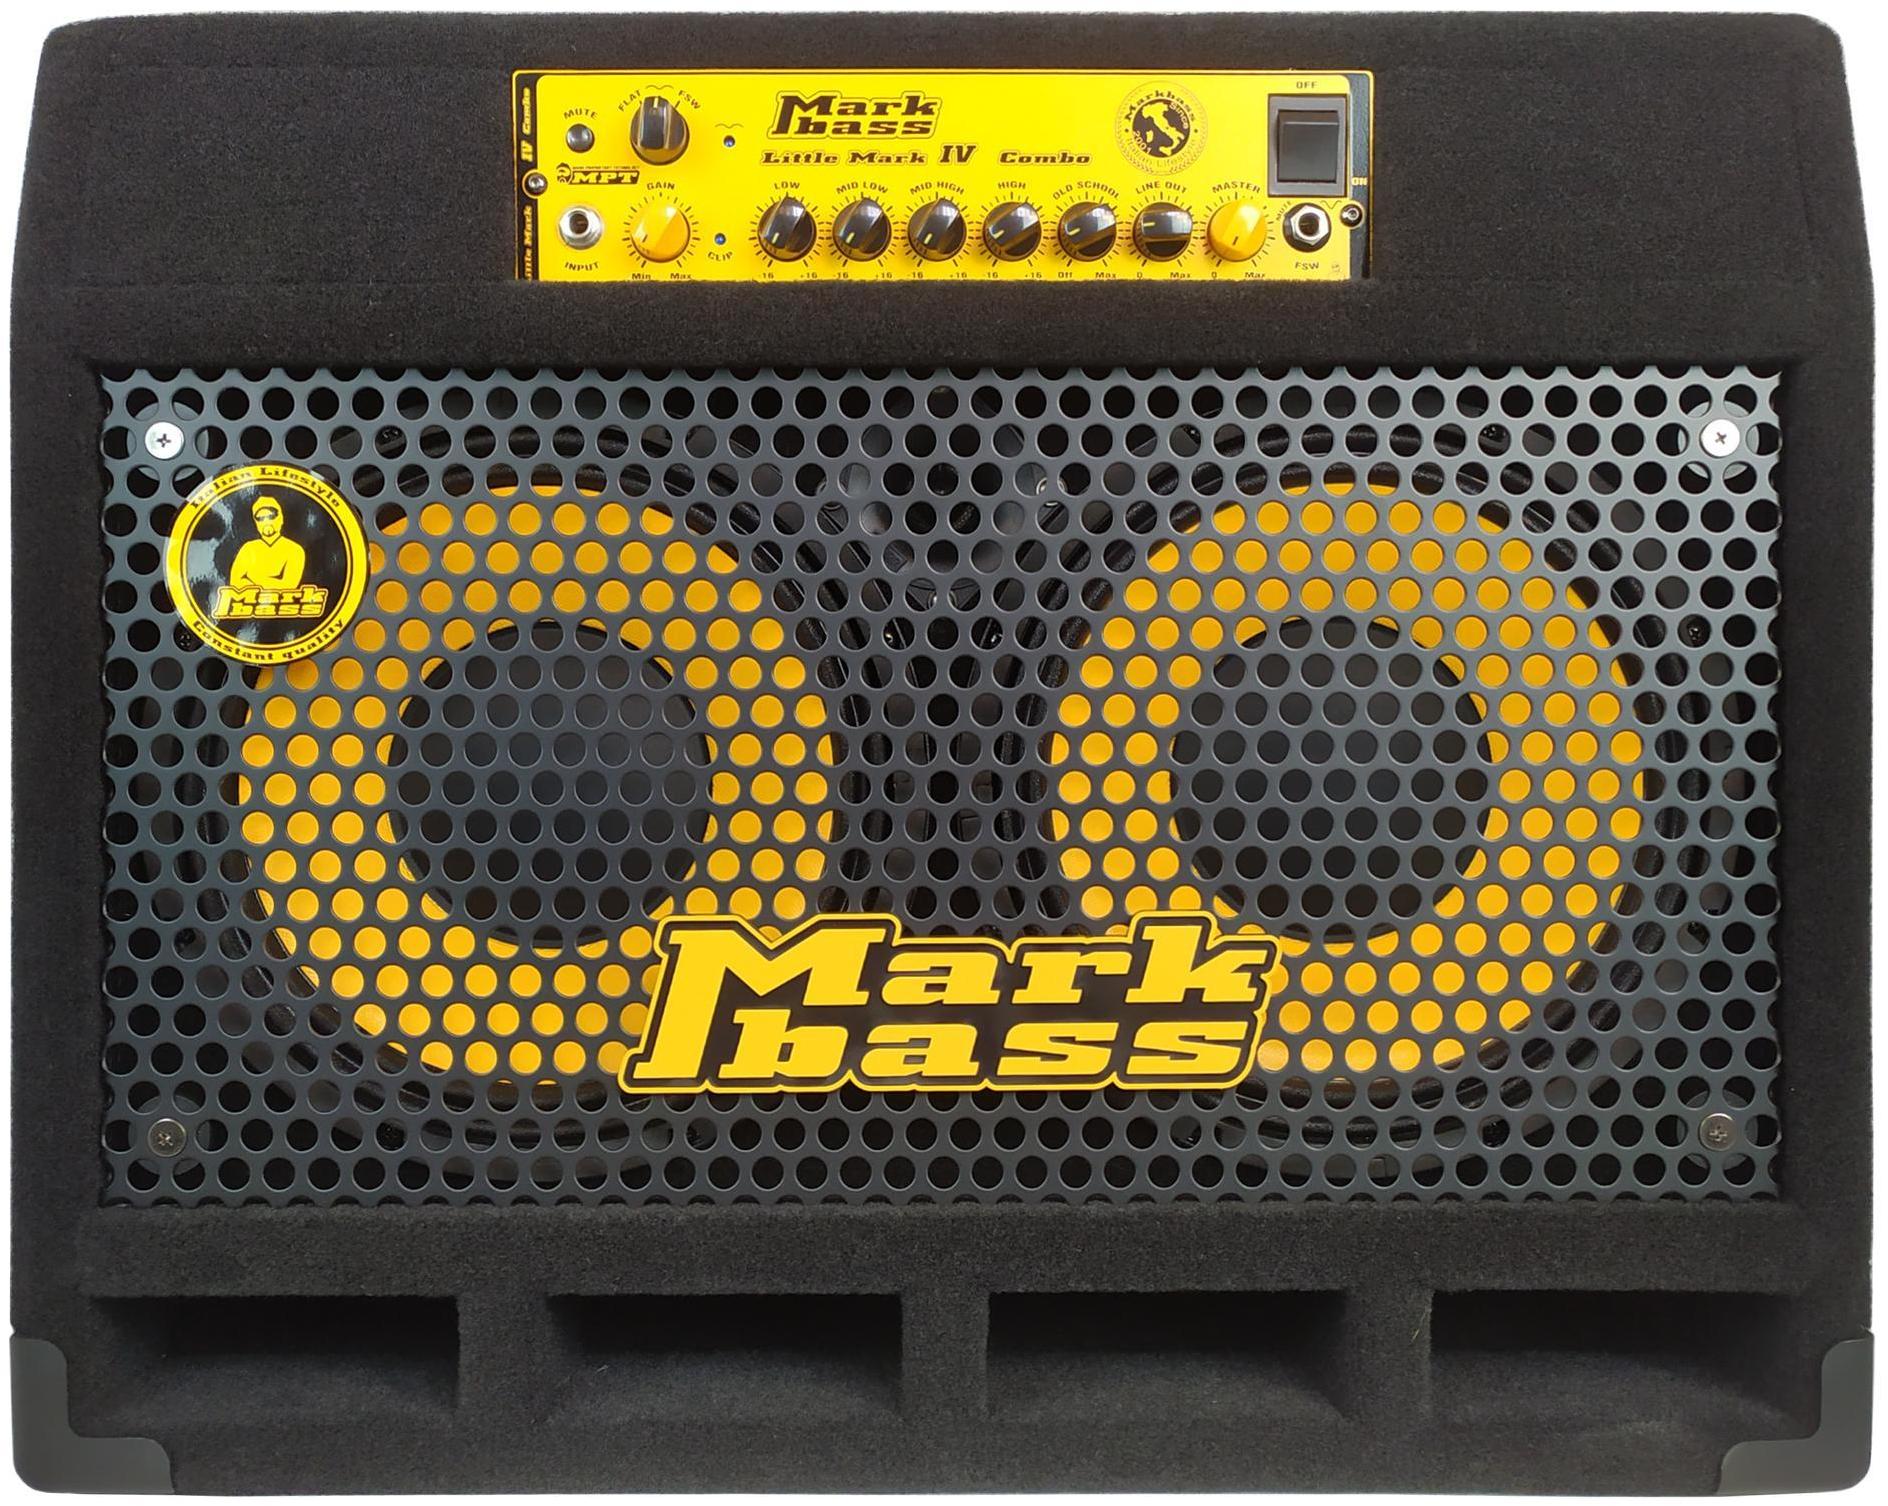 Bass combo amp Markbass CMD 102P IV